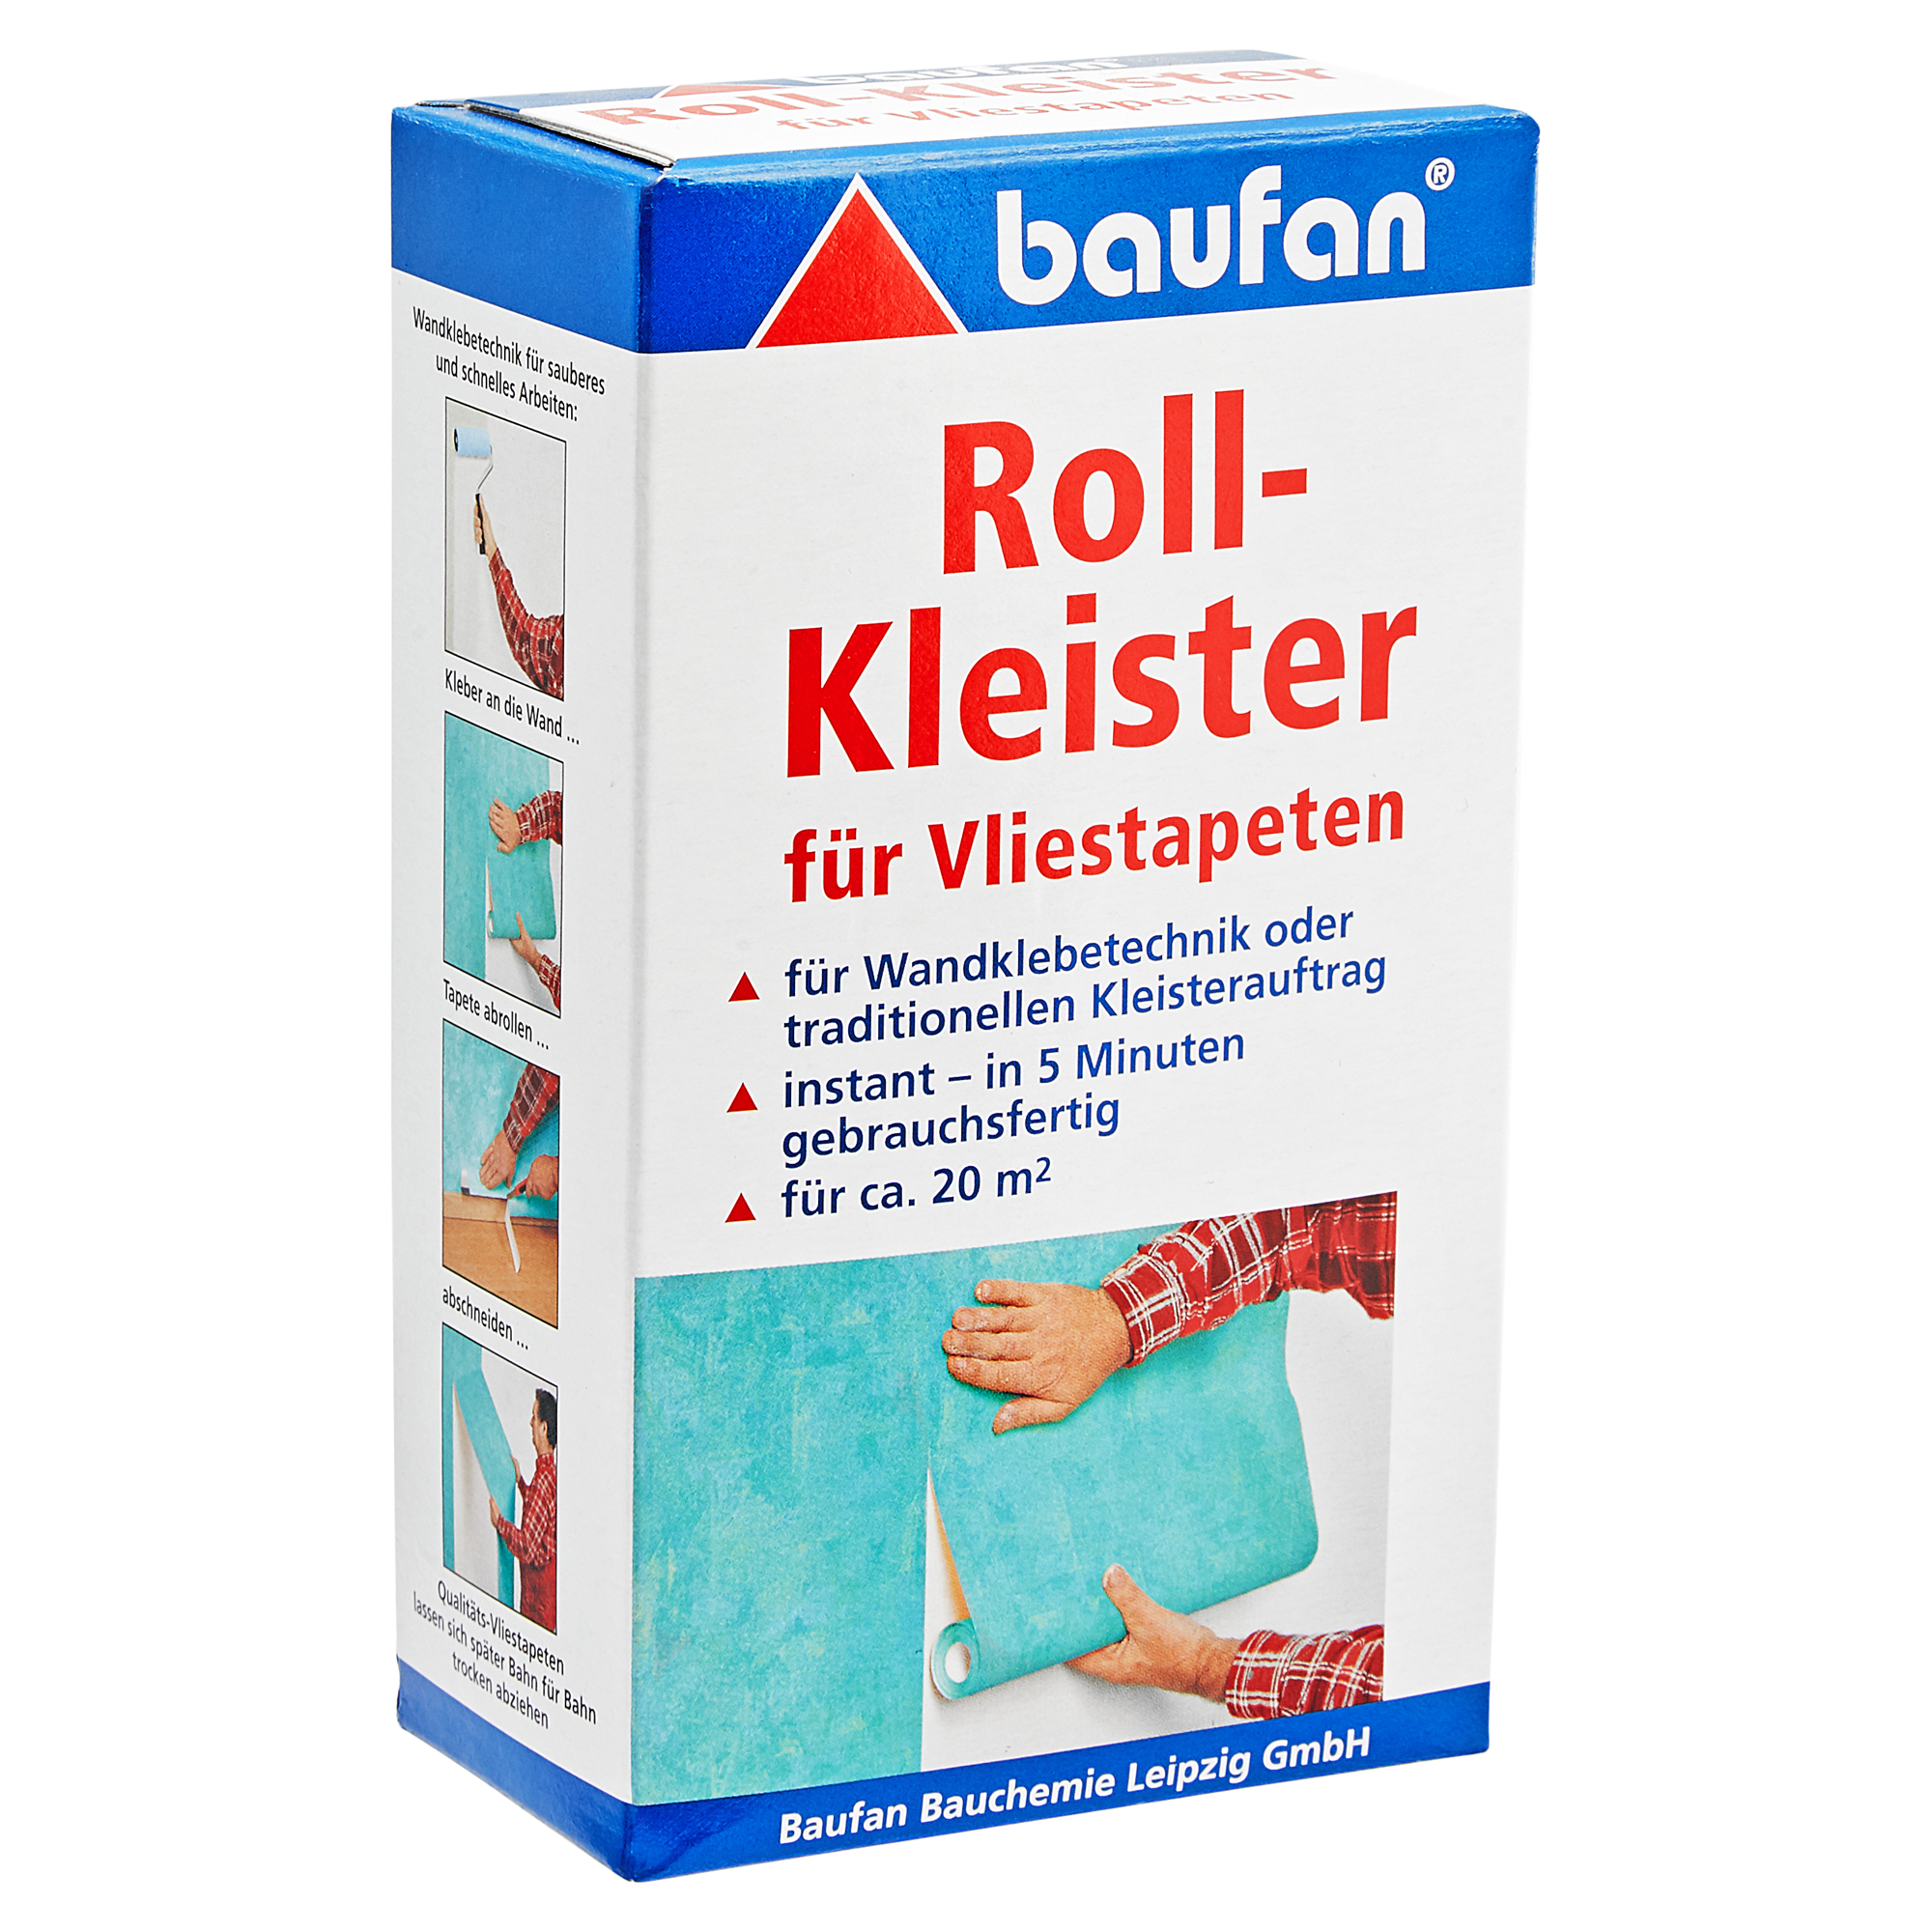 Rollkleister für Vliestapeten 0,2 kg + product picture